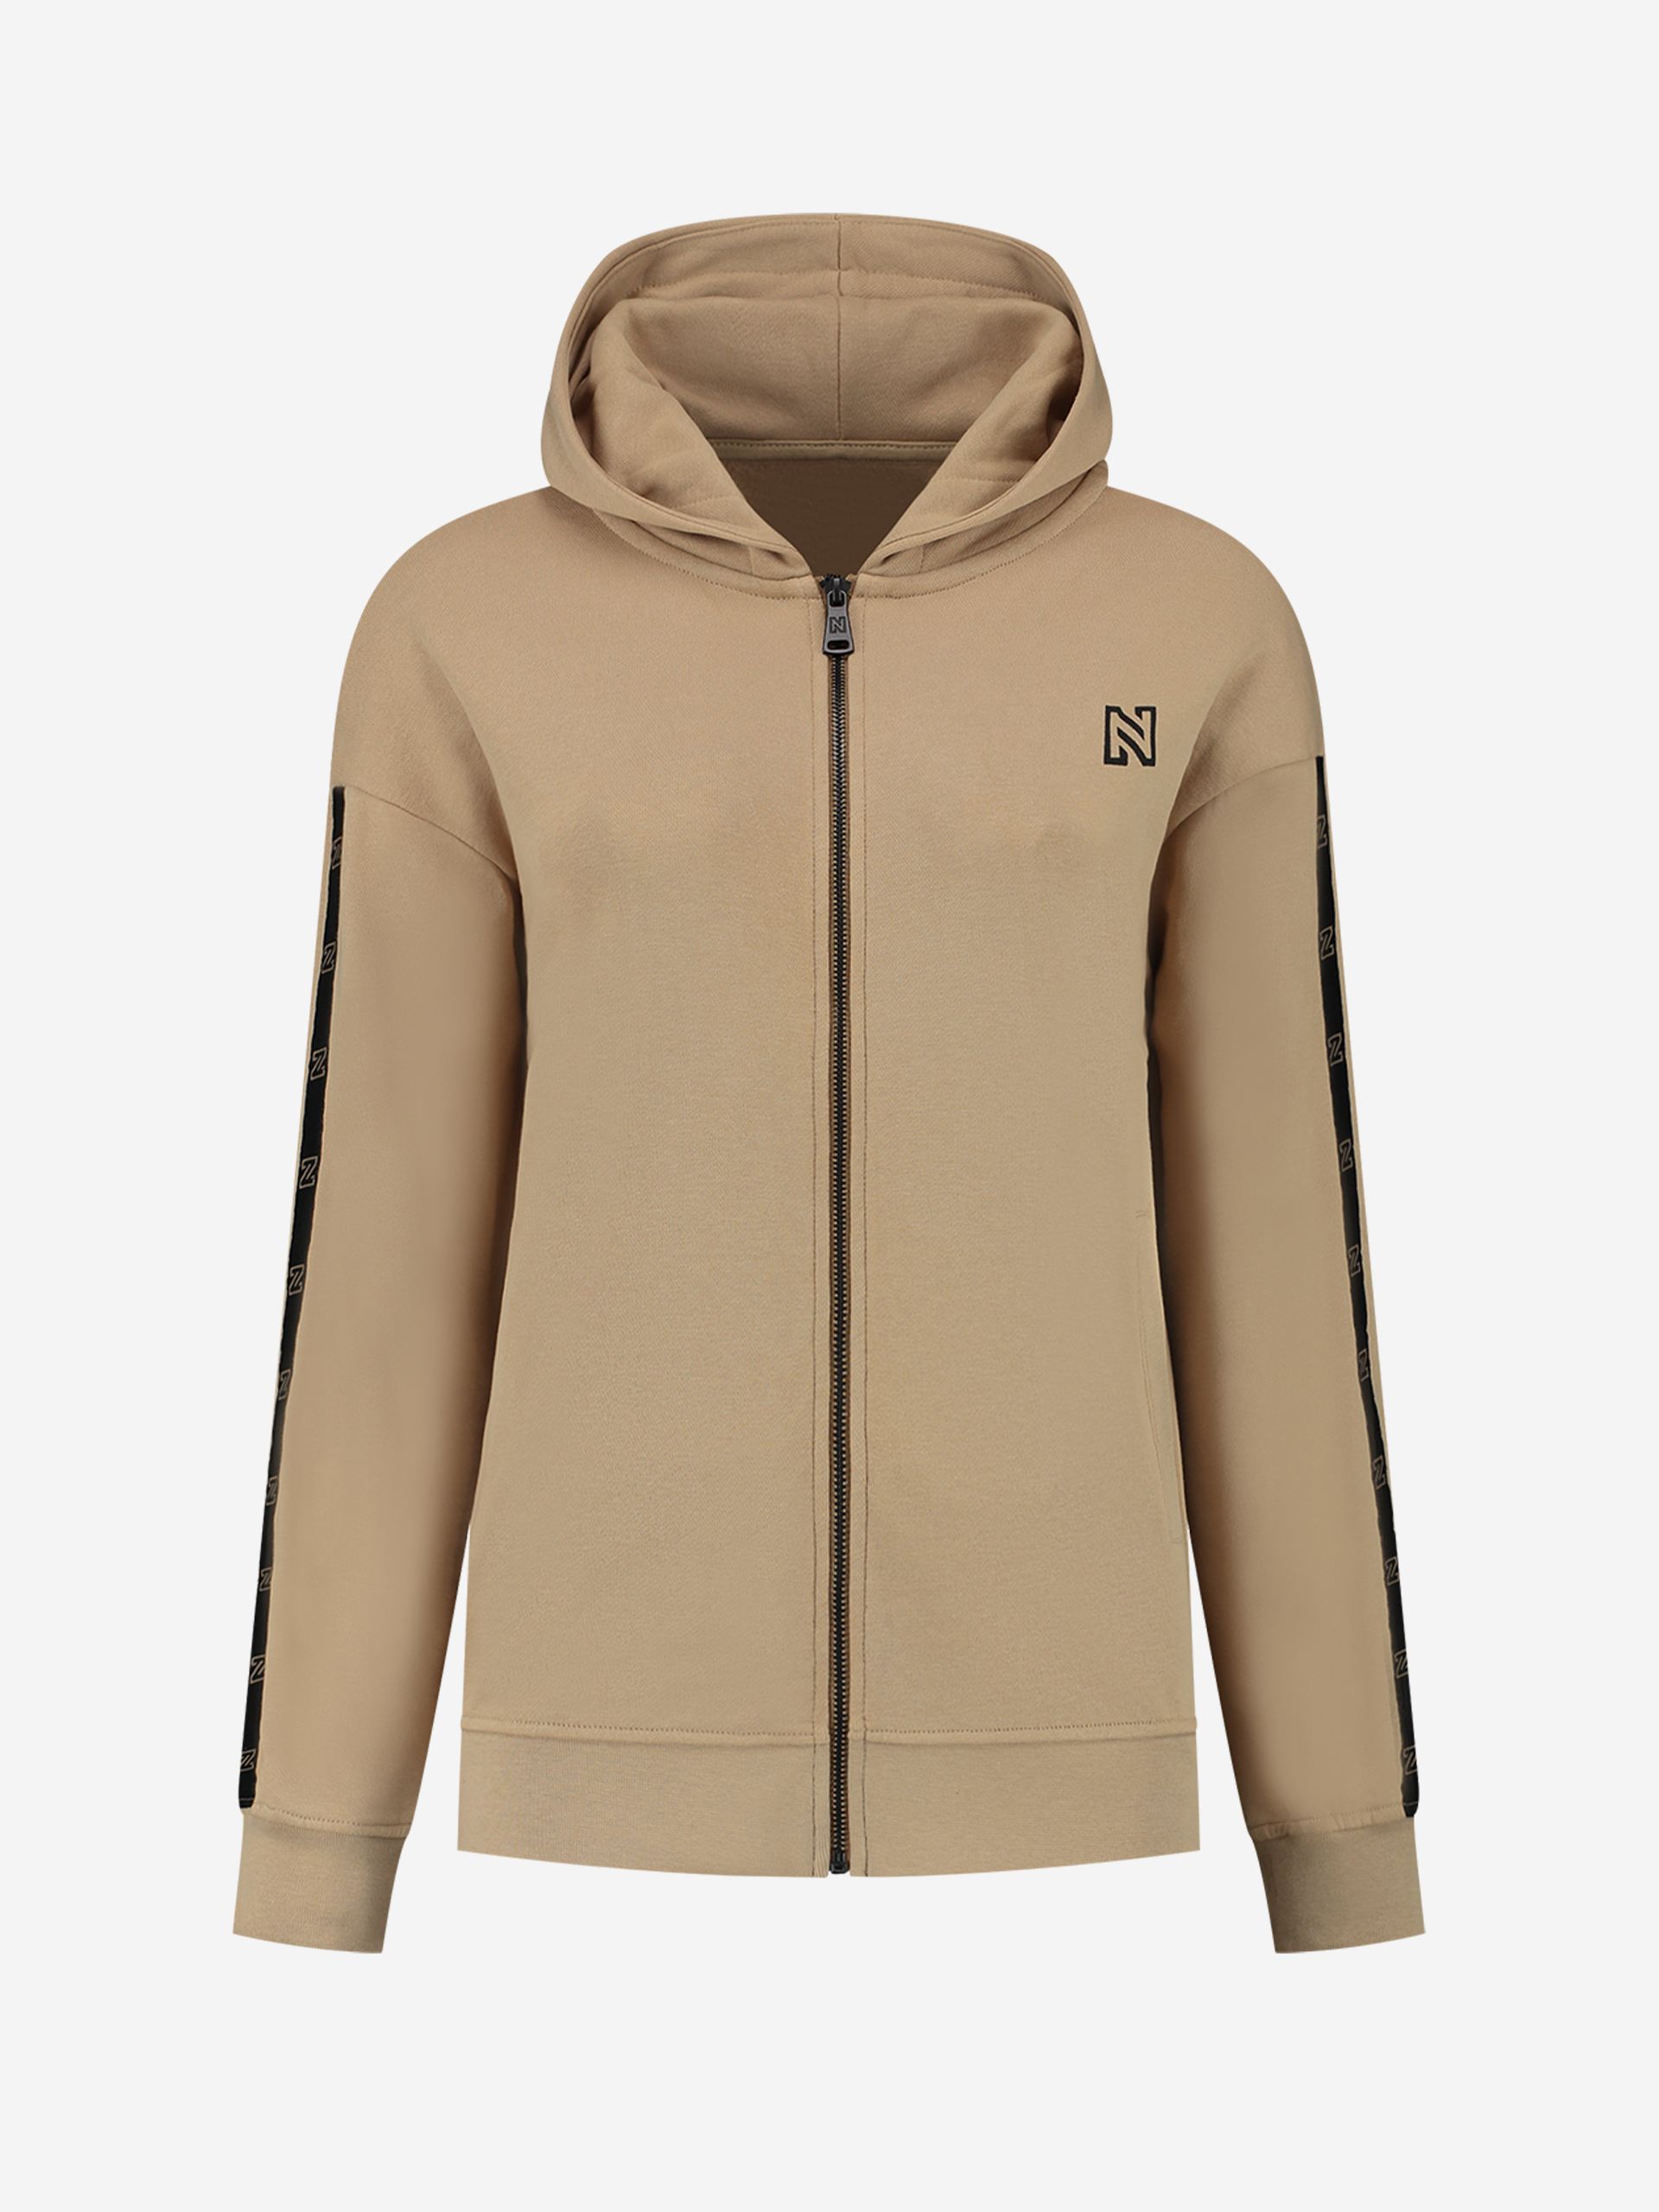 Zip hoodie with N logo 